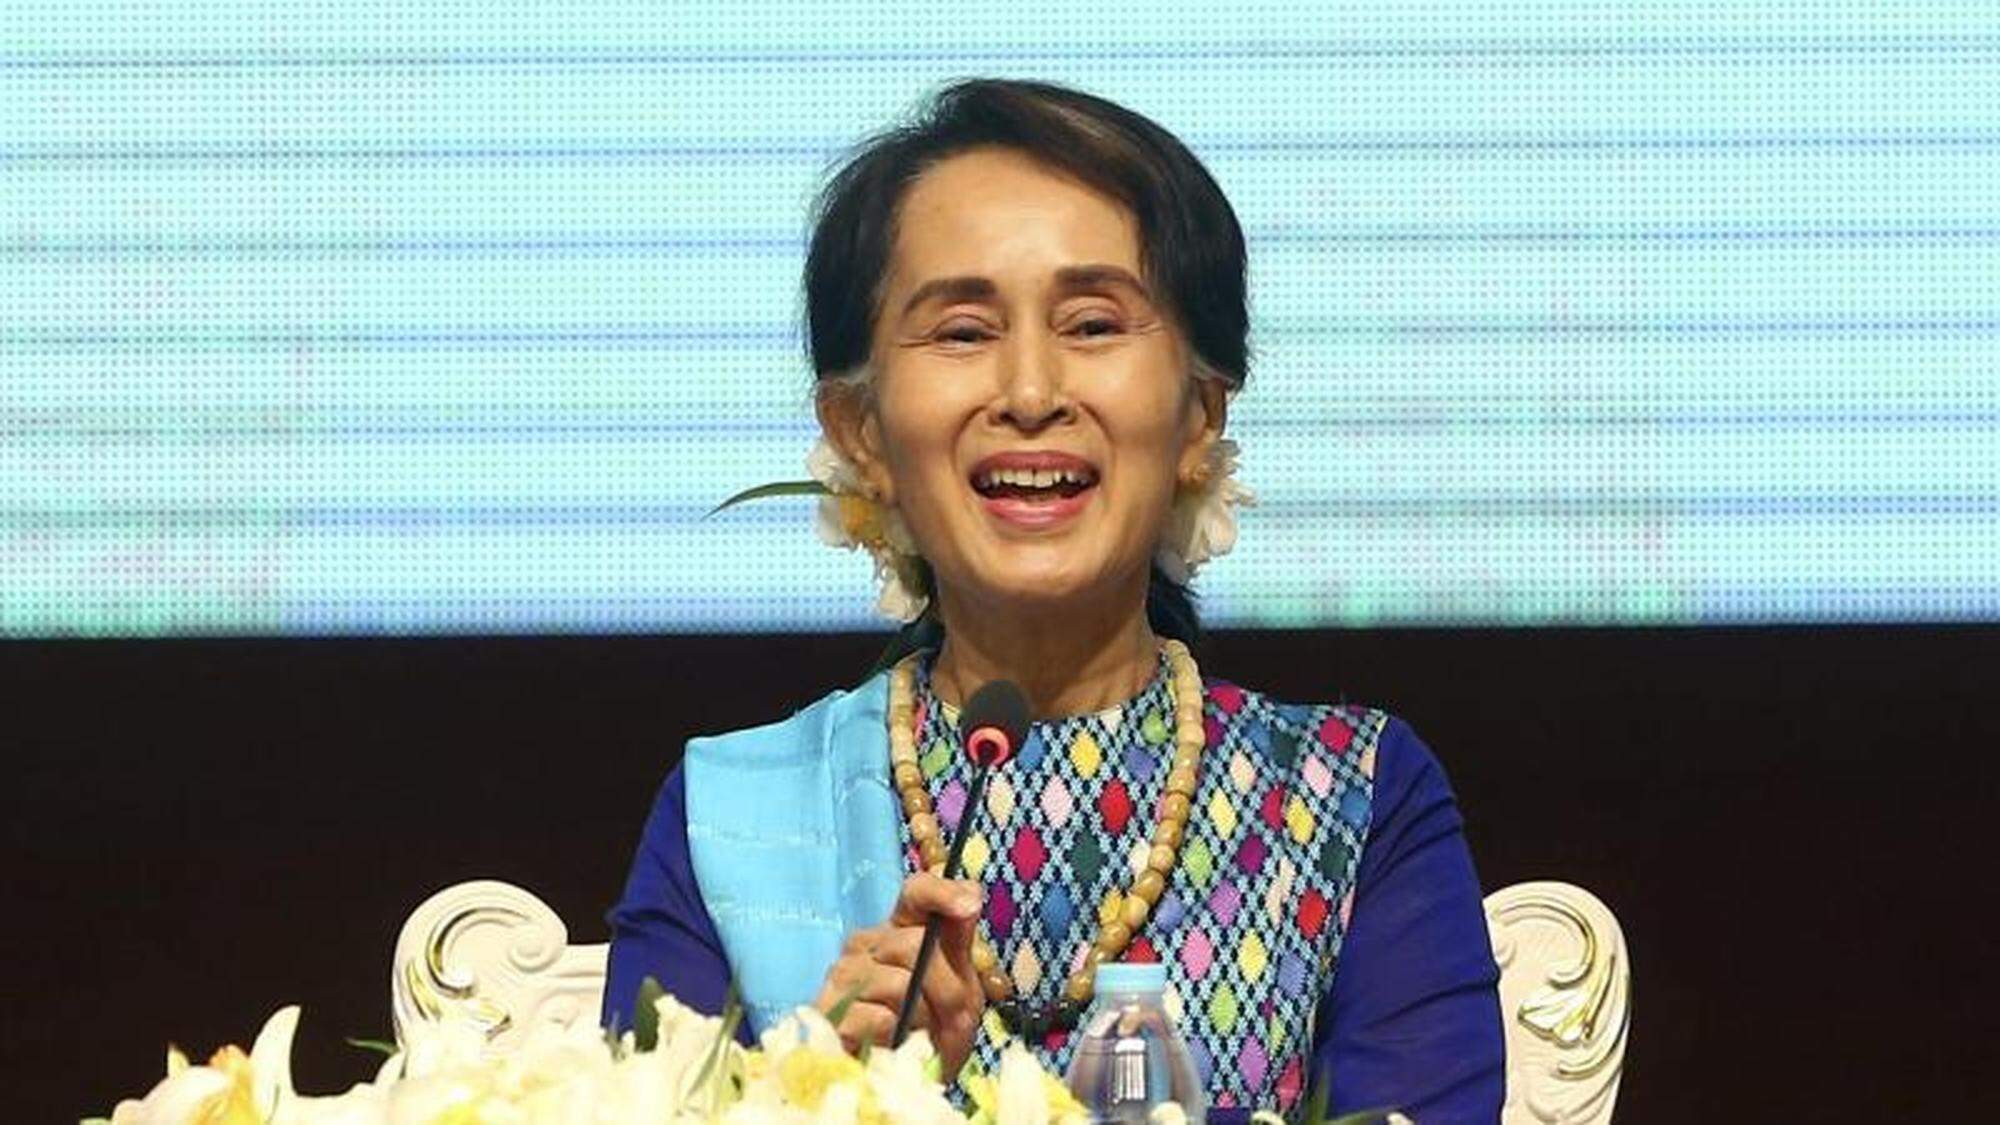 Die Experten kritisierten auch Regierungschefin und Friedensnobelpreisträgerin Aung San Suu Kyi dafür, ihre moralische Autorität nicht genutzt zu haben.